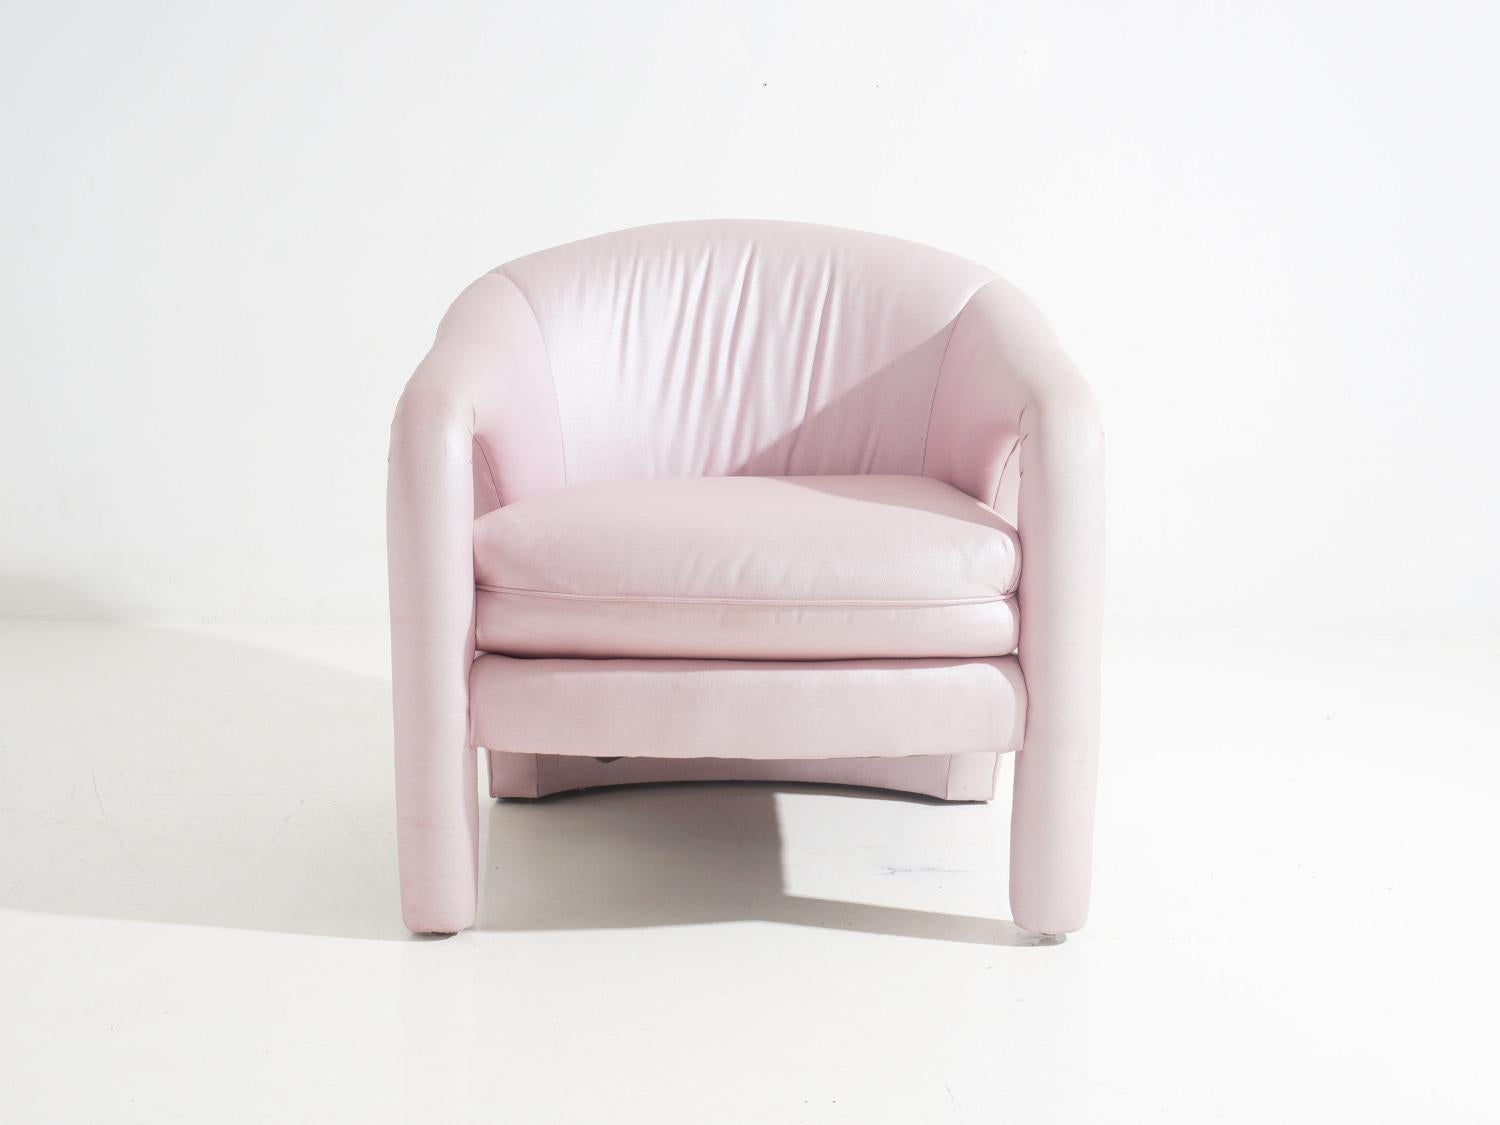 Adoptez l'art d'être bien assis avec cette chaise aussi charmante que confortable, et laissez votre salon devenir une galerie de sophistication postmoderne !

- 28 